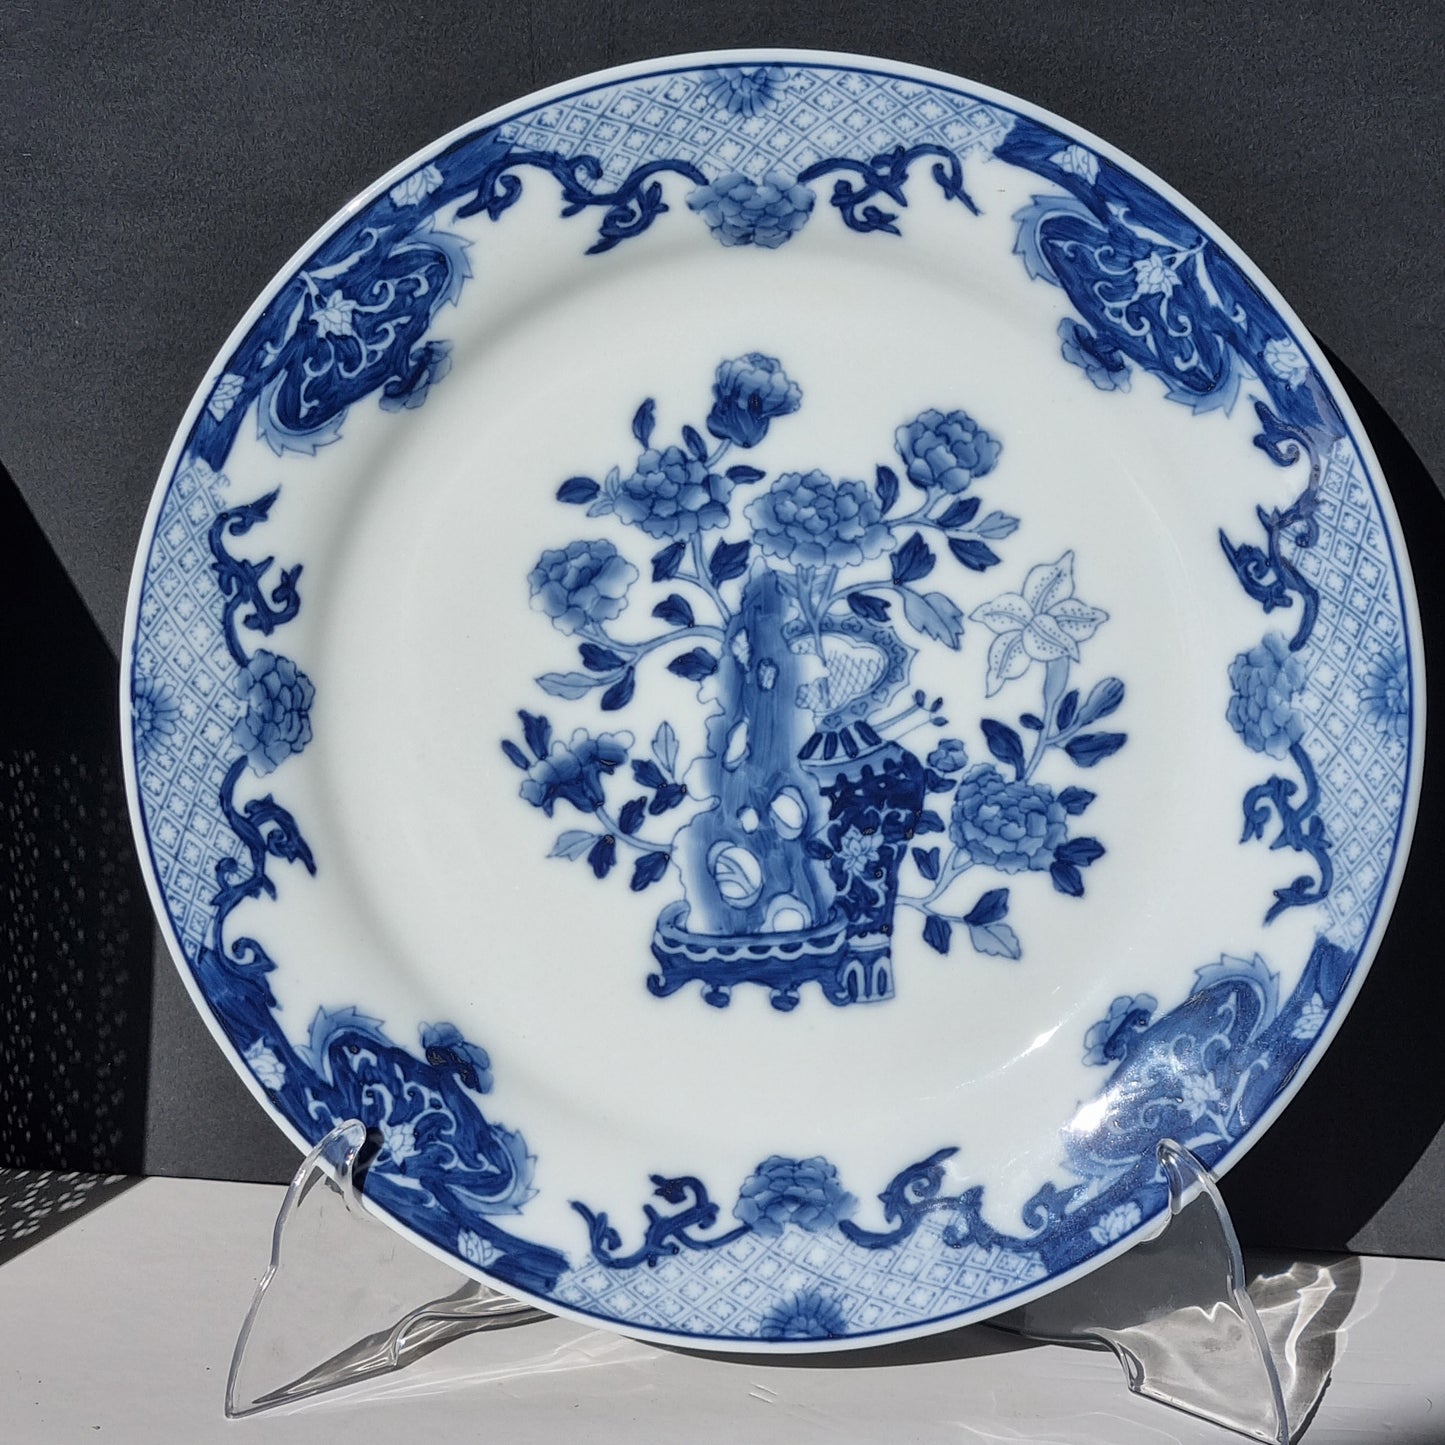 6 bajoplatos de porcelana blue and white (2)